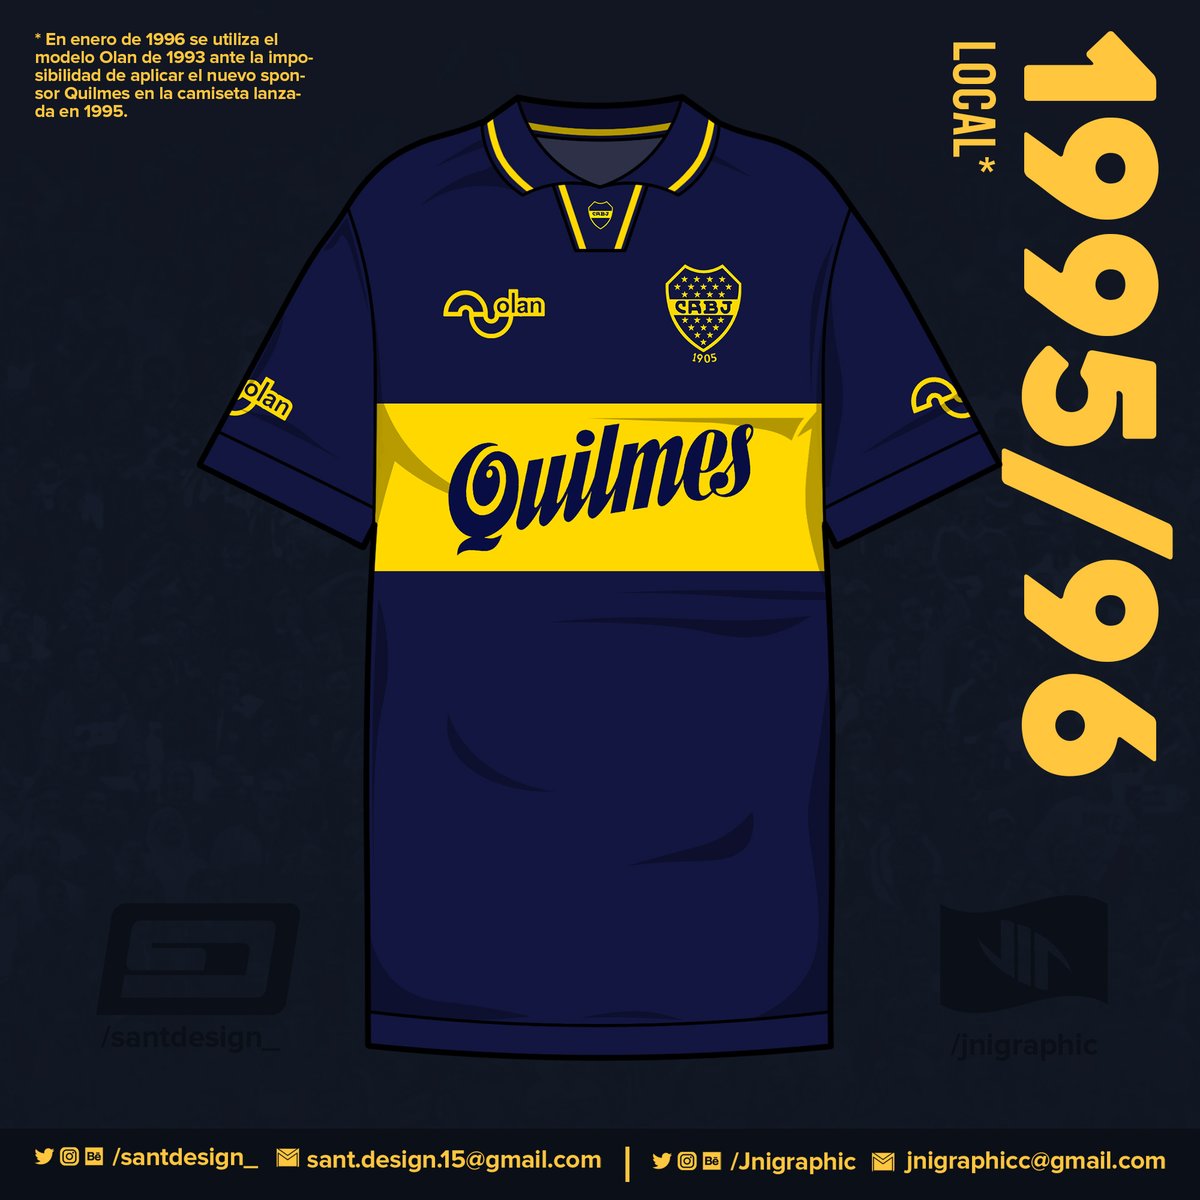 1995: Boca cumple 90 años como institución, y es con una nueva camiseta que Olan le rinde homenaje.1996: Ante la imposibilidad de estampar el nuevo sponsor Quilmes en la camiseta, Olan debe recurrir a la camiseta de 1993.